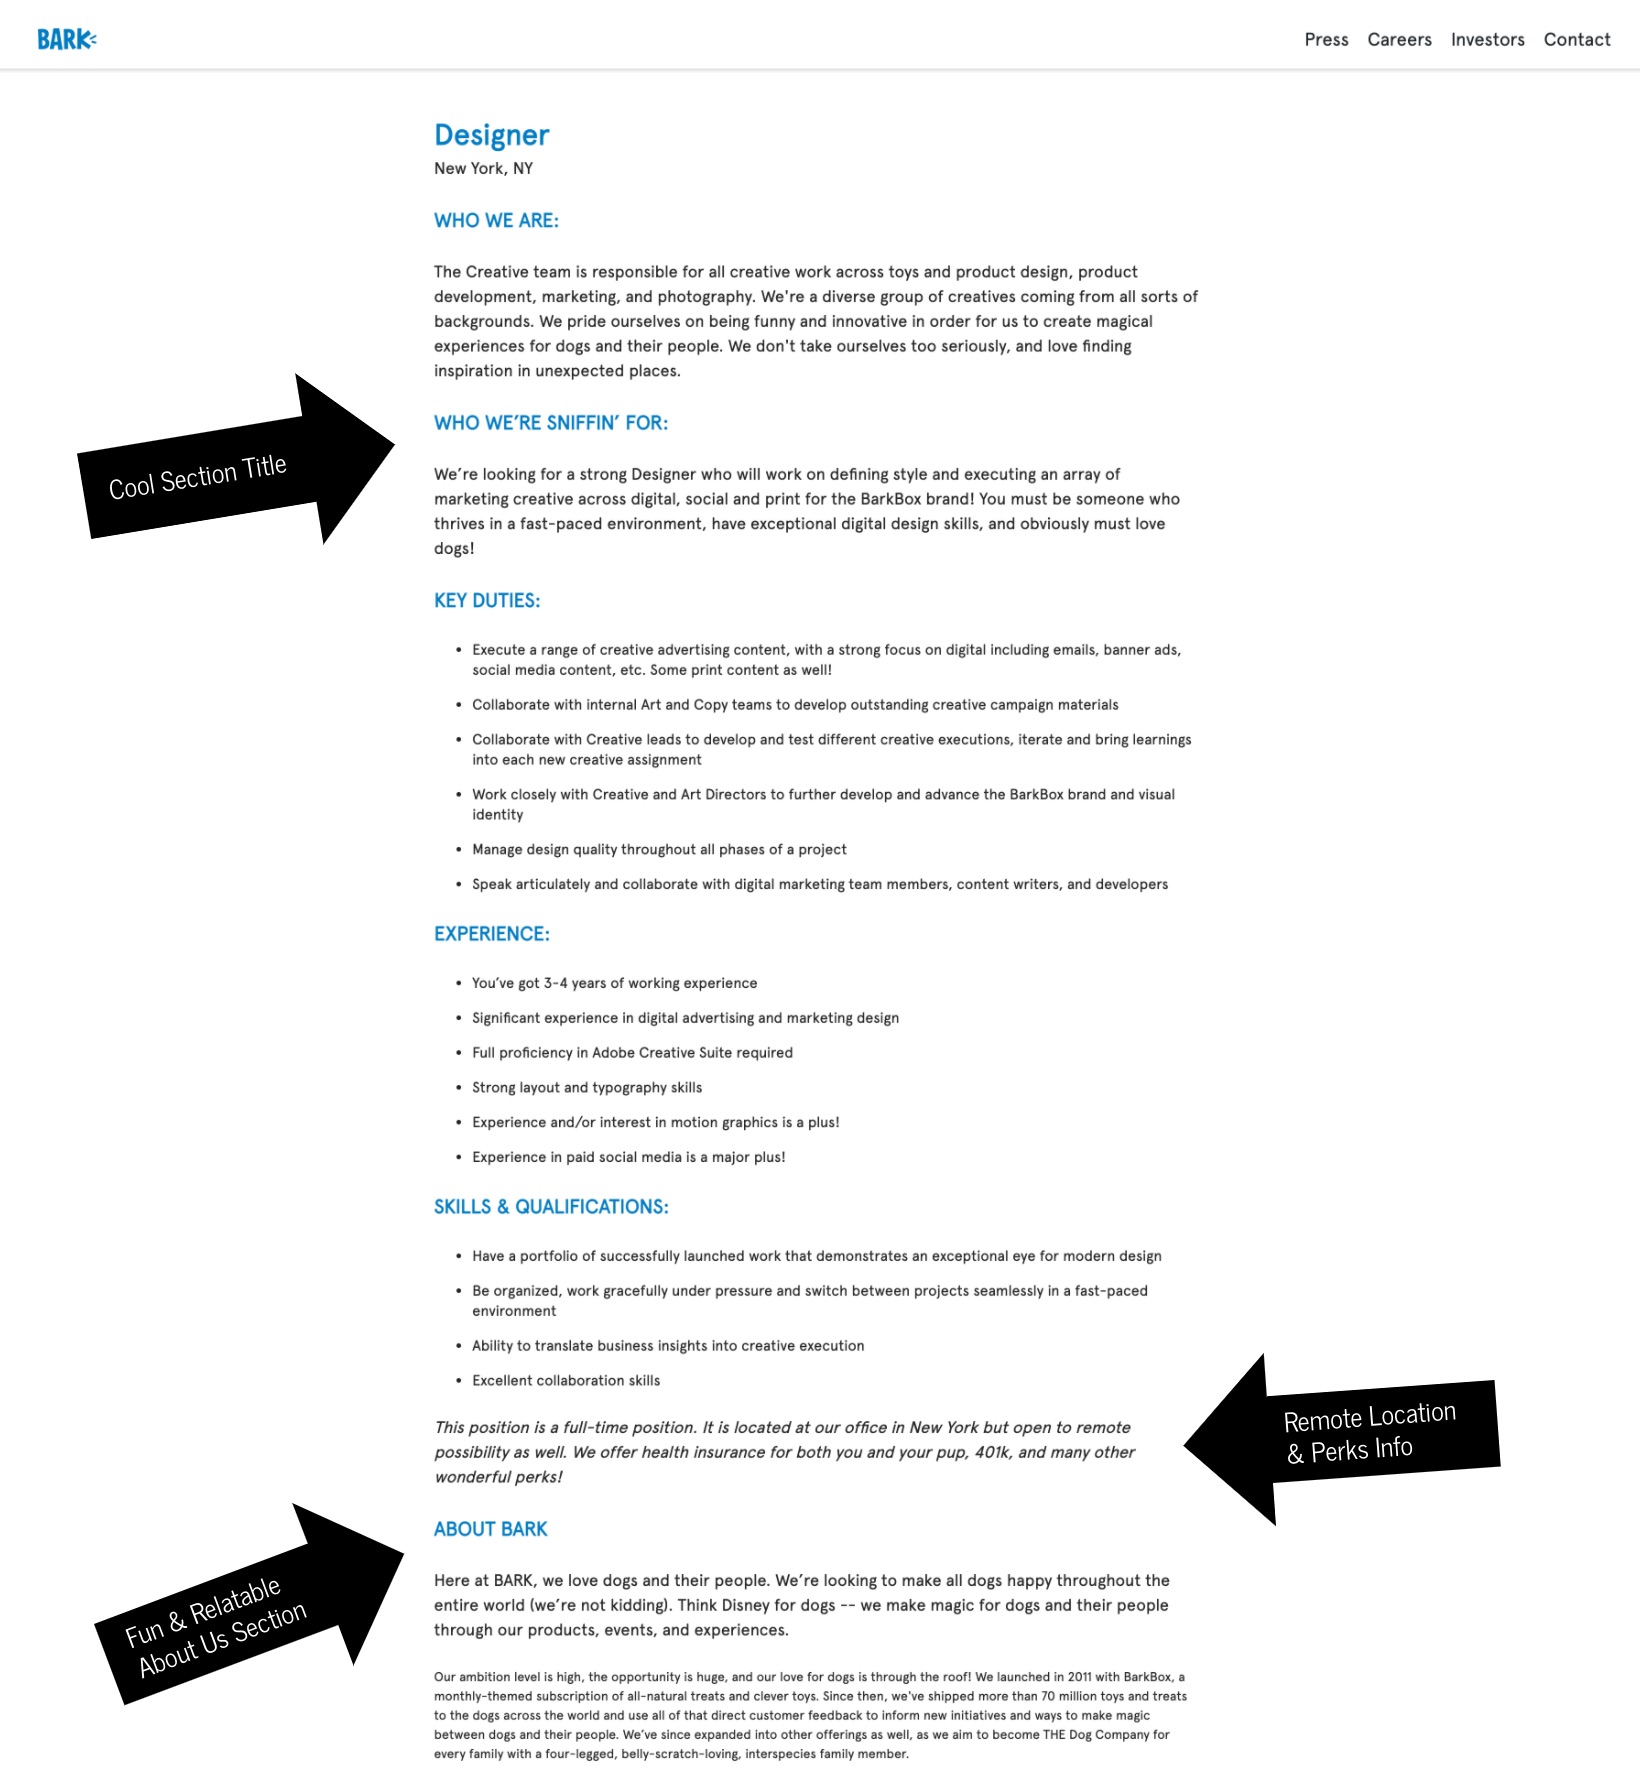 How to write a job description template bark | Ongig